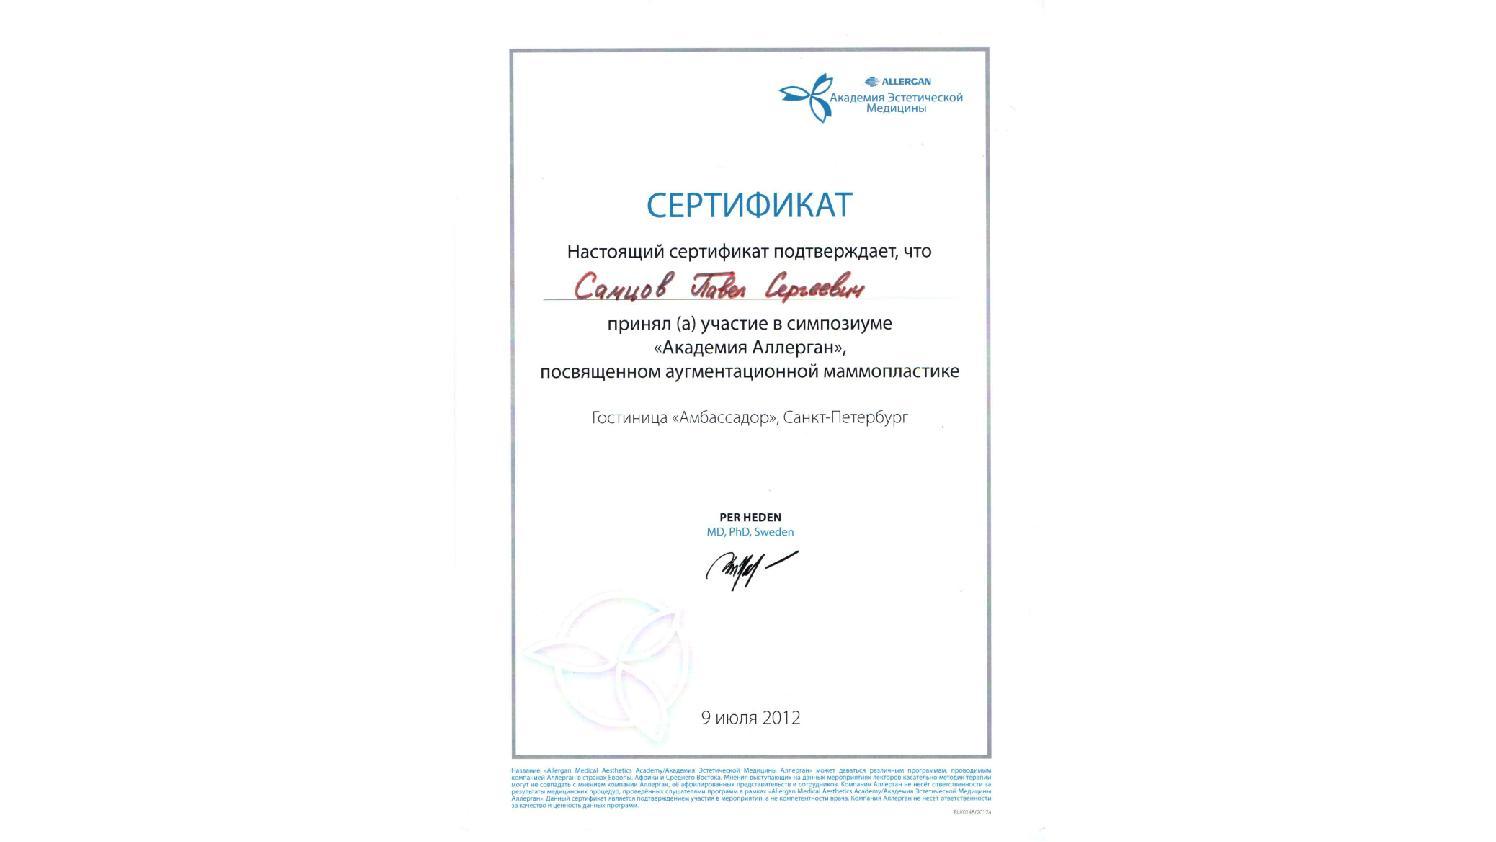 Сертификат участника симпозиума Allergan